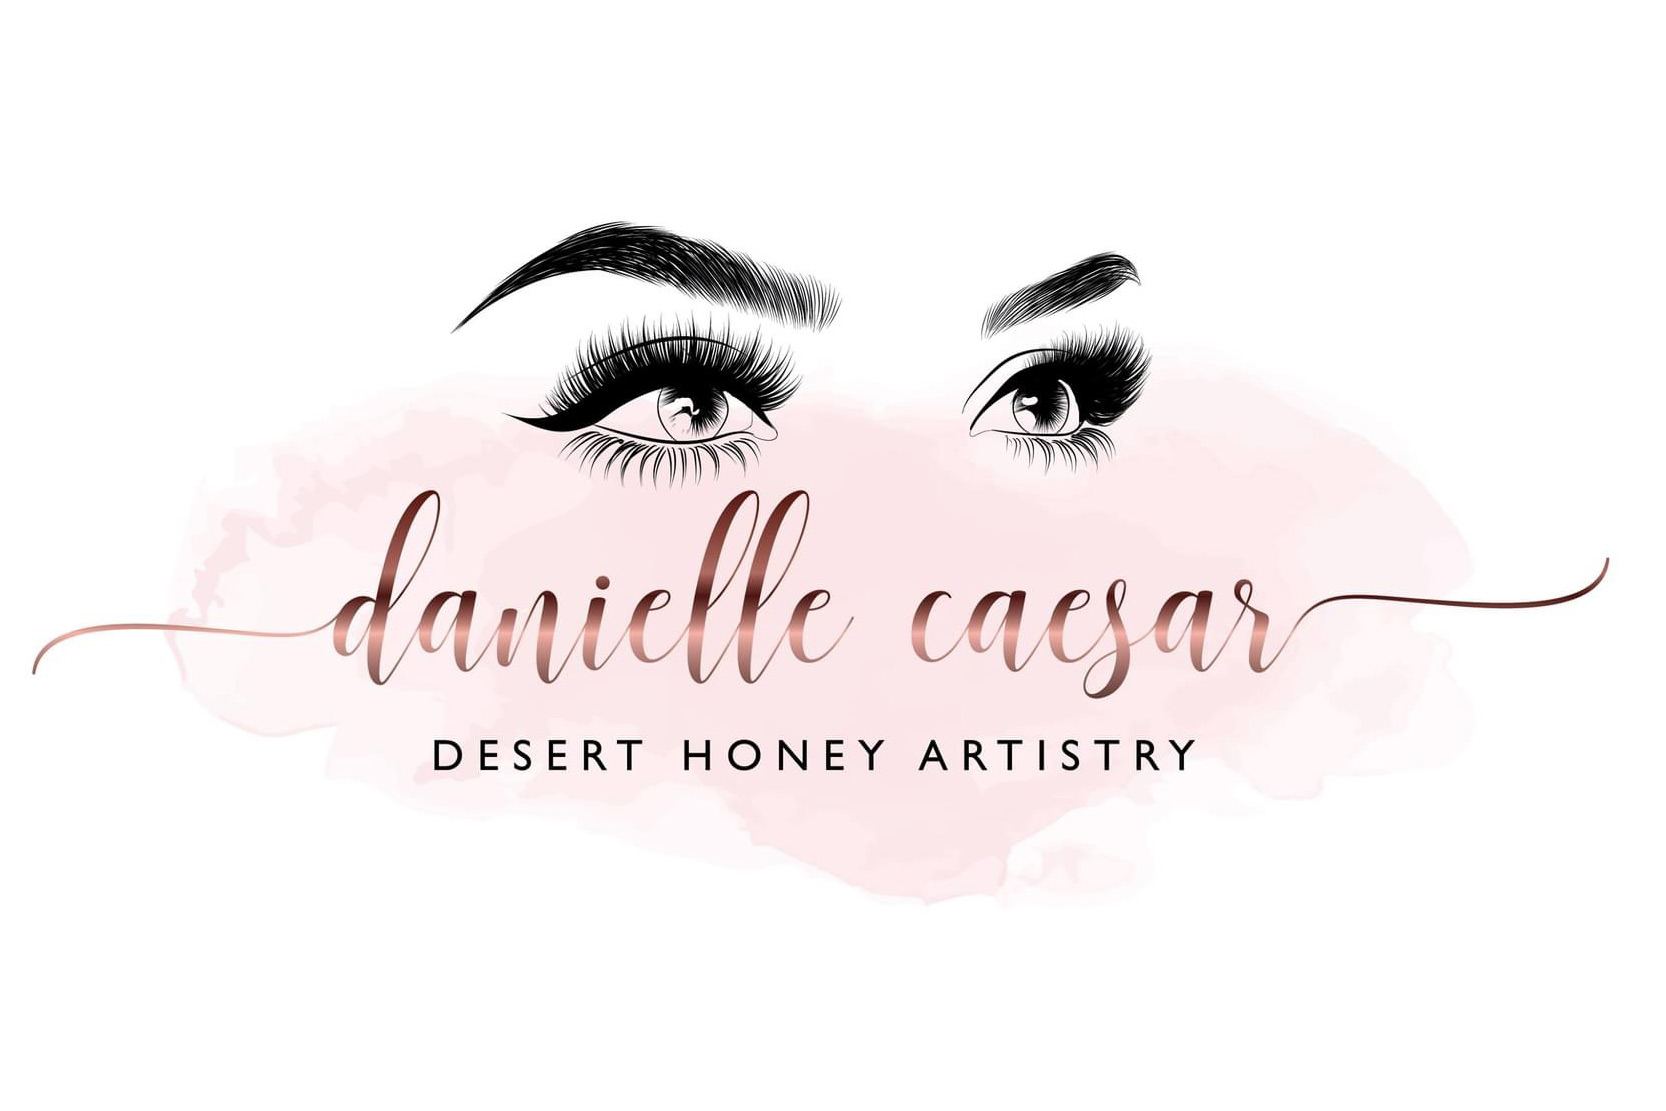 Desert Honey Artistry